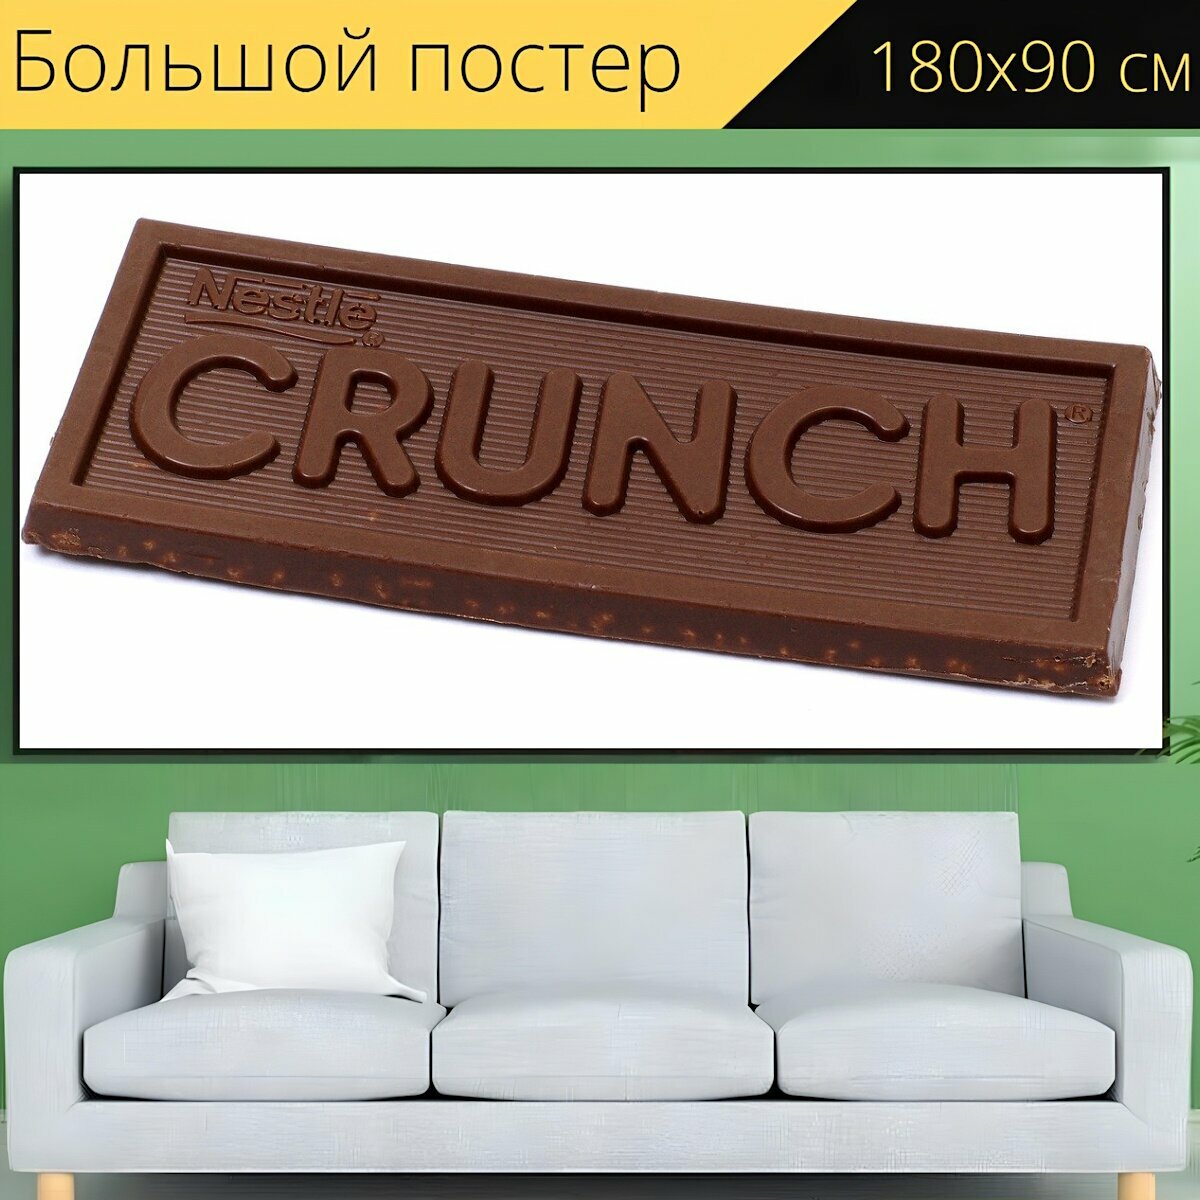 Большой постер "Шоколад, конфеты, сахар" 180 x 90 см. для интерьера